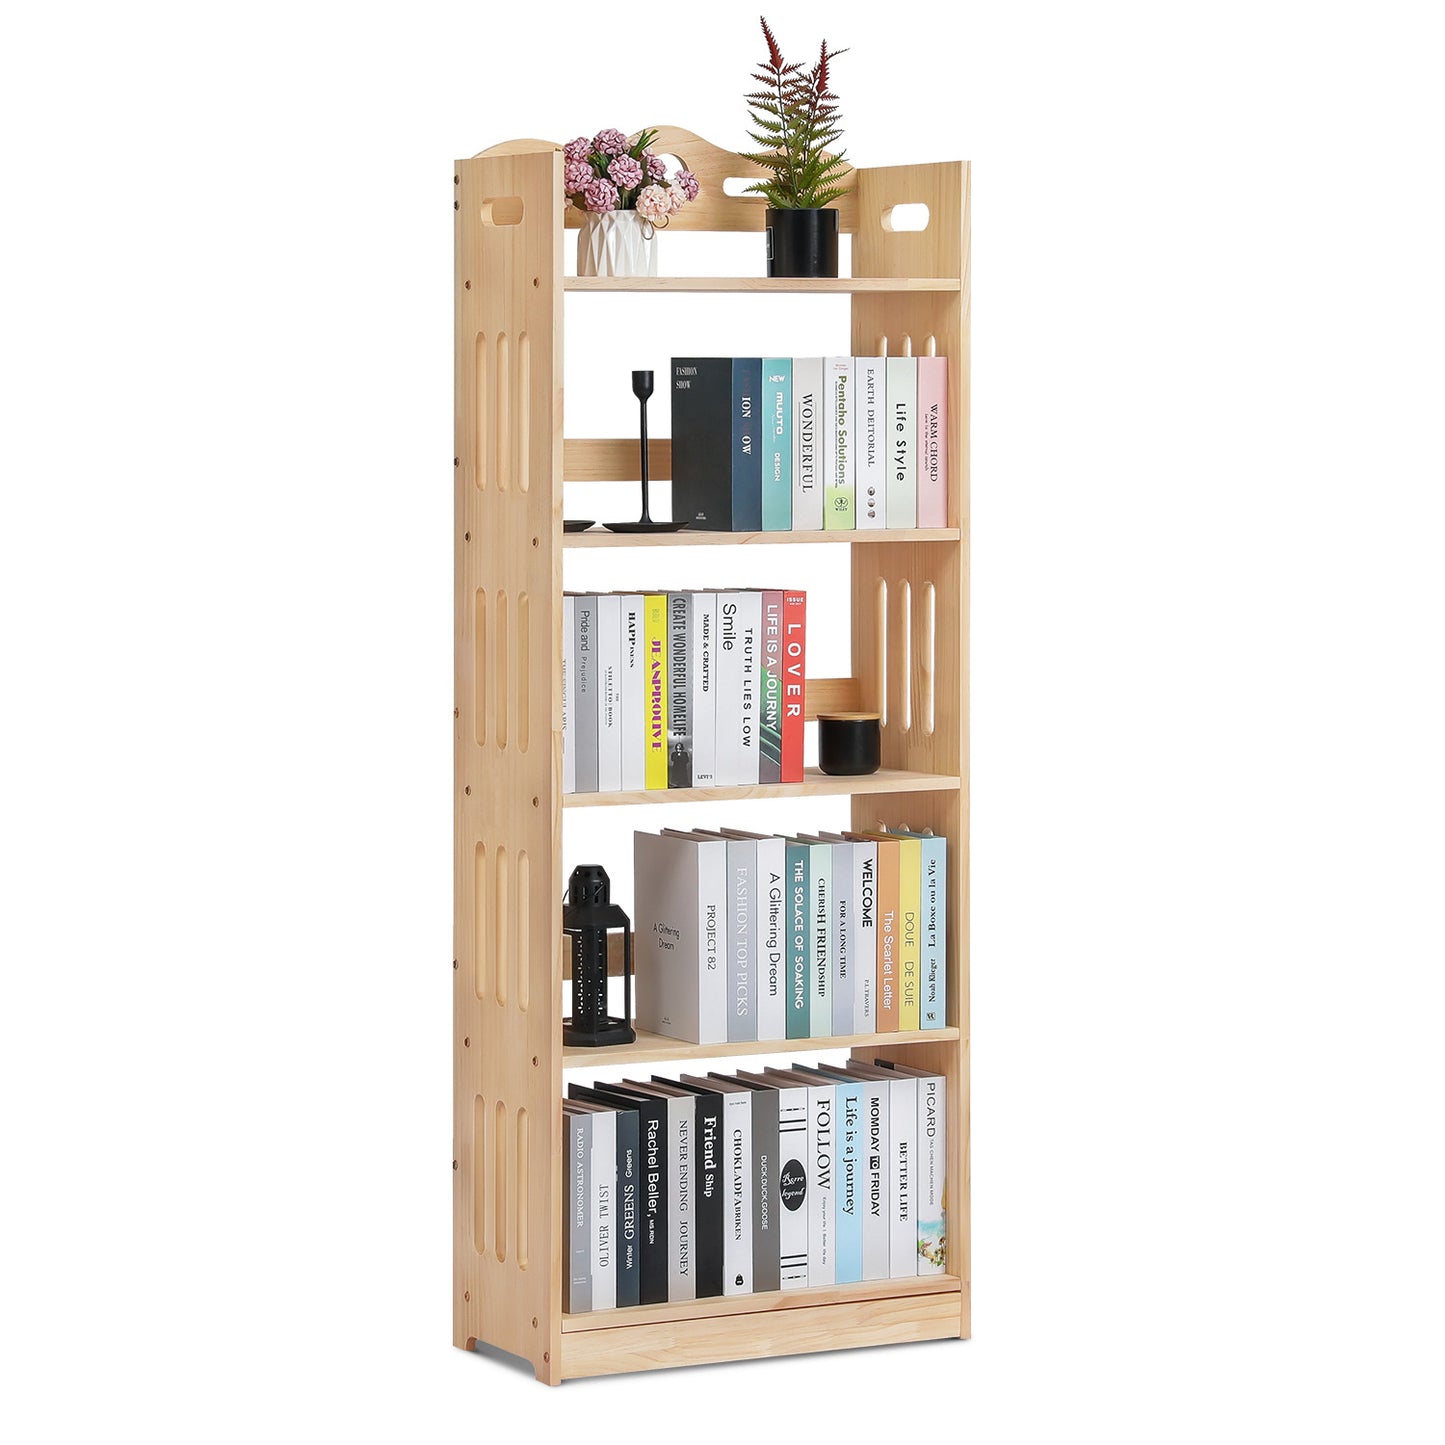 Wooden Display Storage Organizer - 5 Tier - Natural